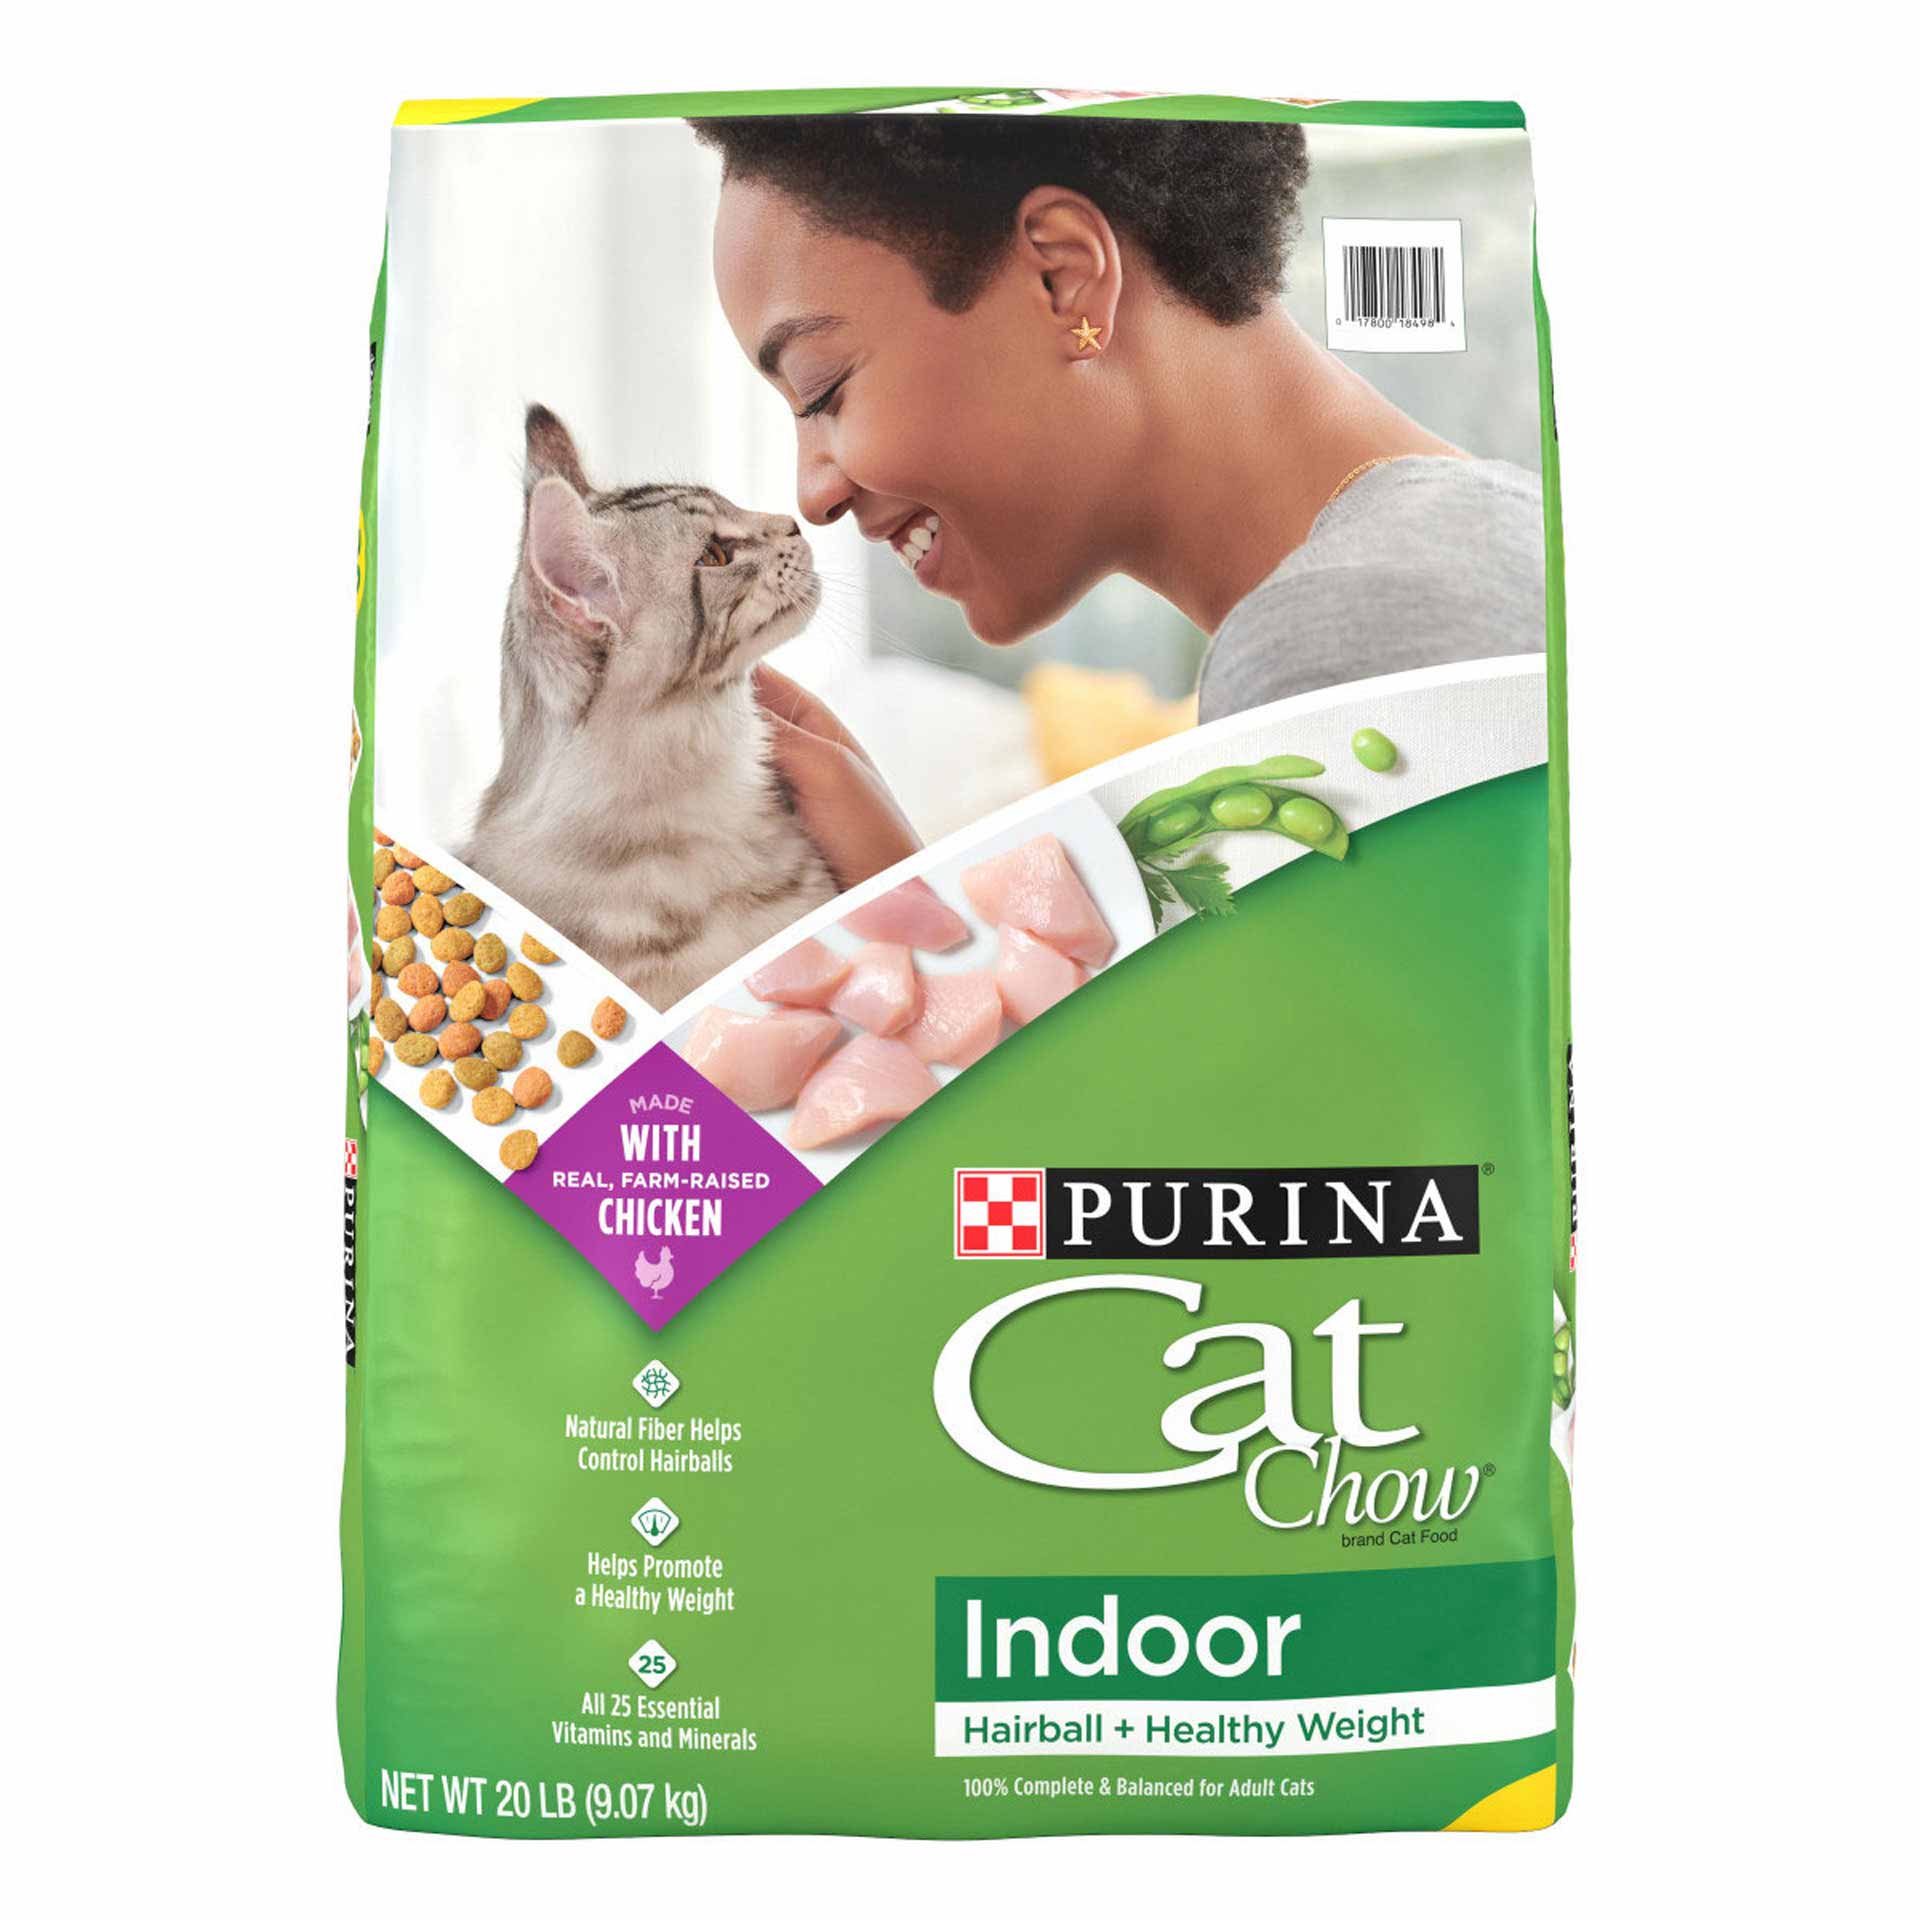 Purina Cat Food Cat Chow Indoor 20lb